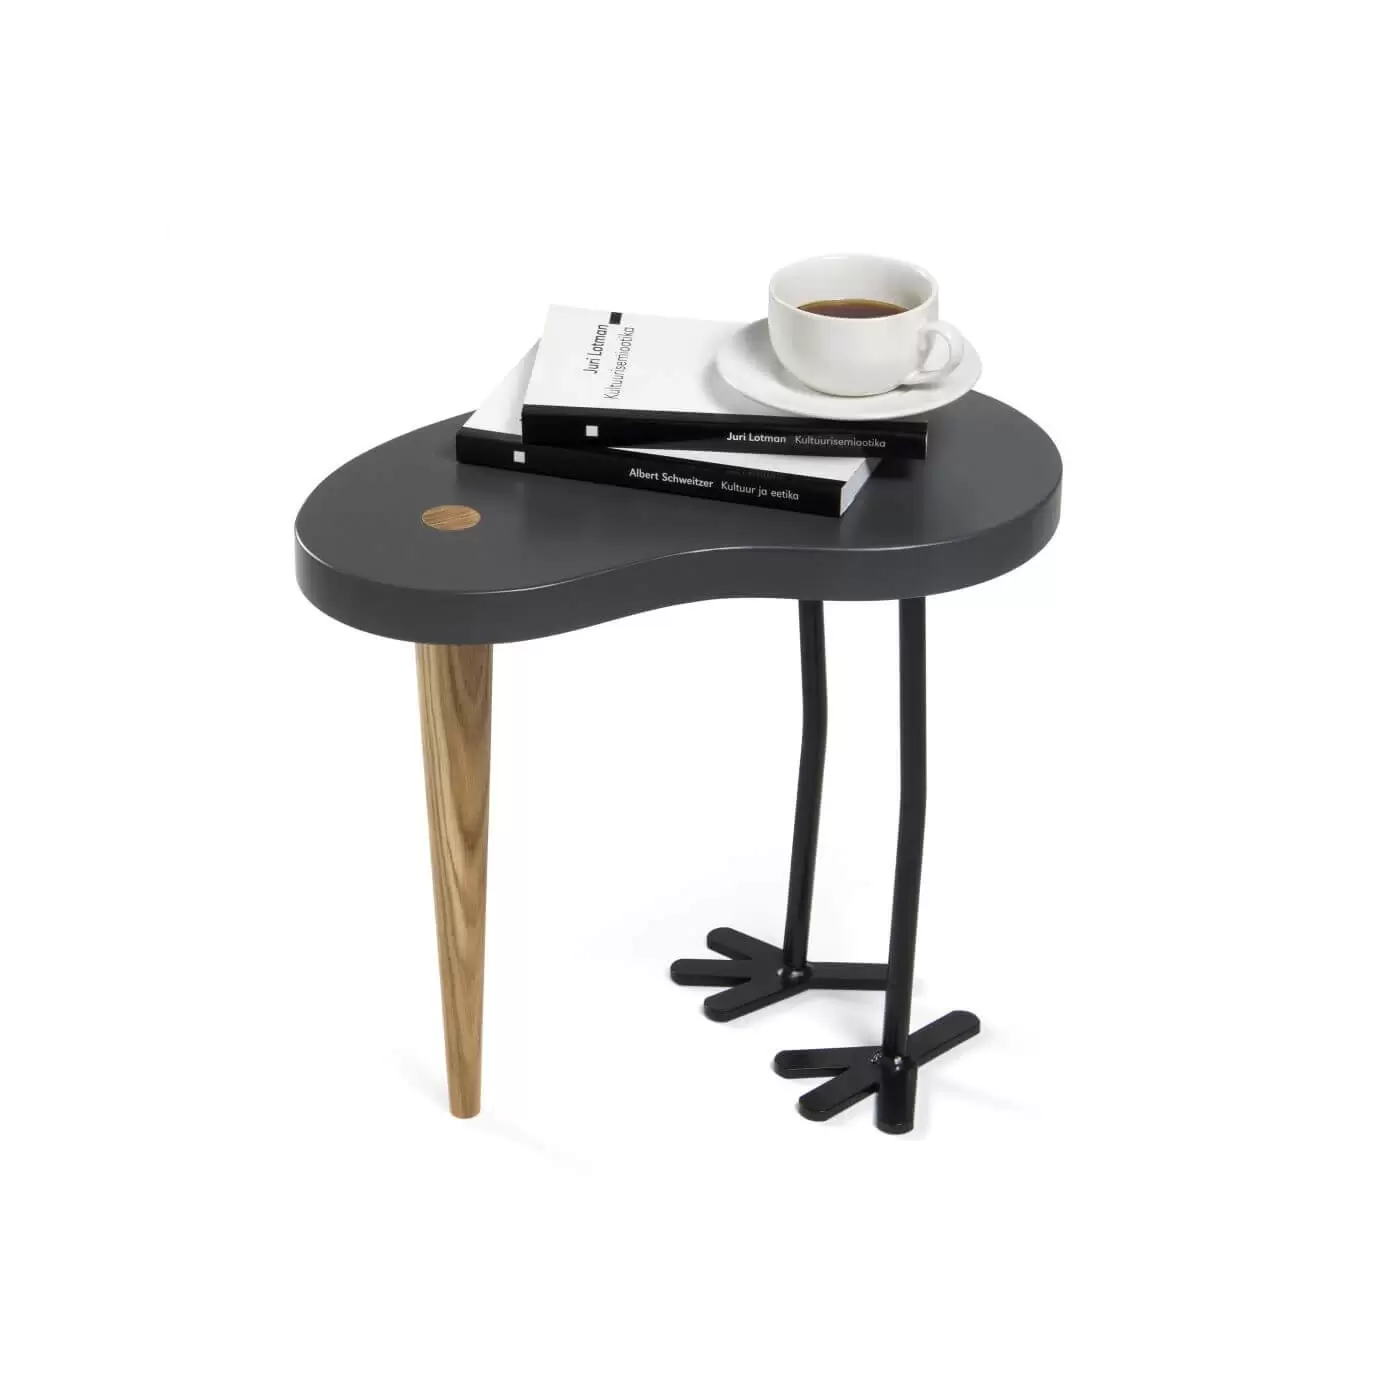 Stolik ozdobny, drewniany z szarym blatem, jedną dębową nogą i dwoma metalowymi nogami. Może być stolikiem przy kanpaie, stolikiem kawowym lub stolikiem nocnym.